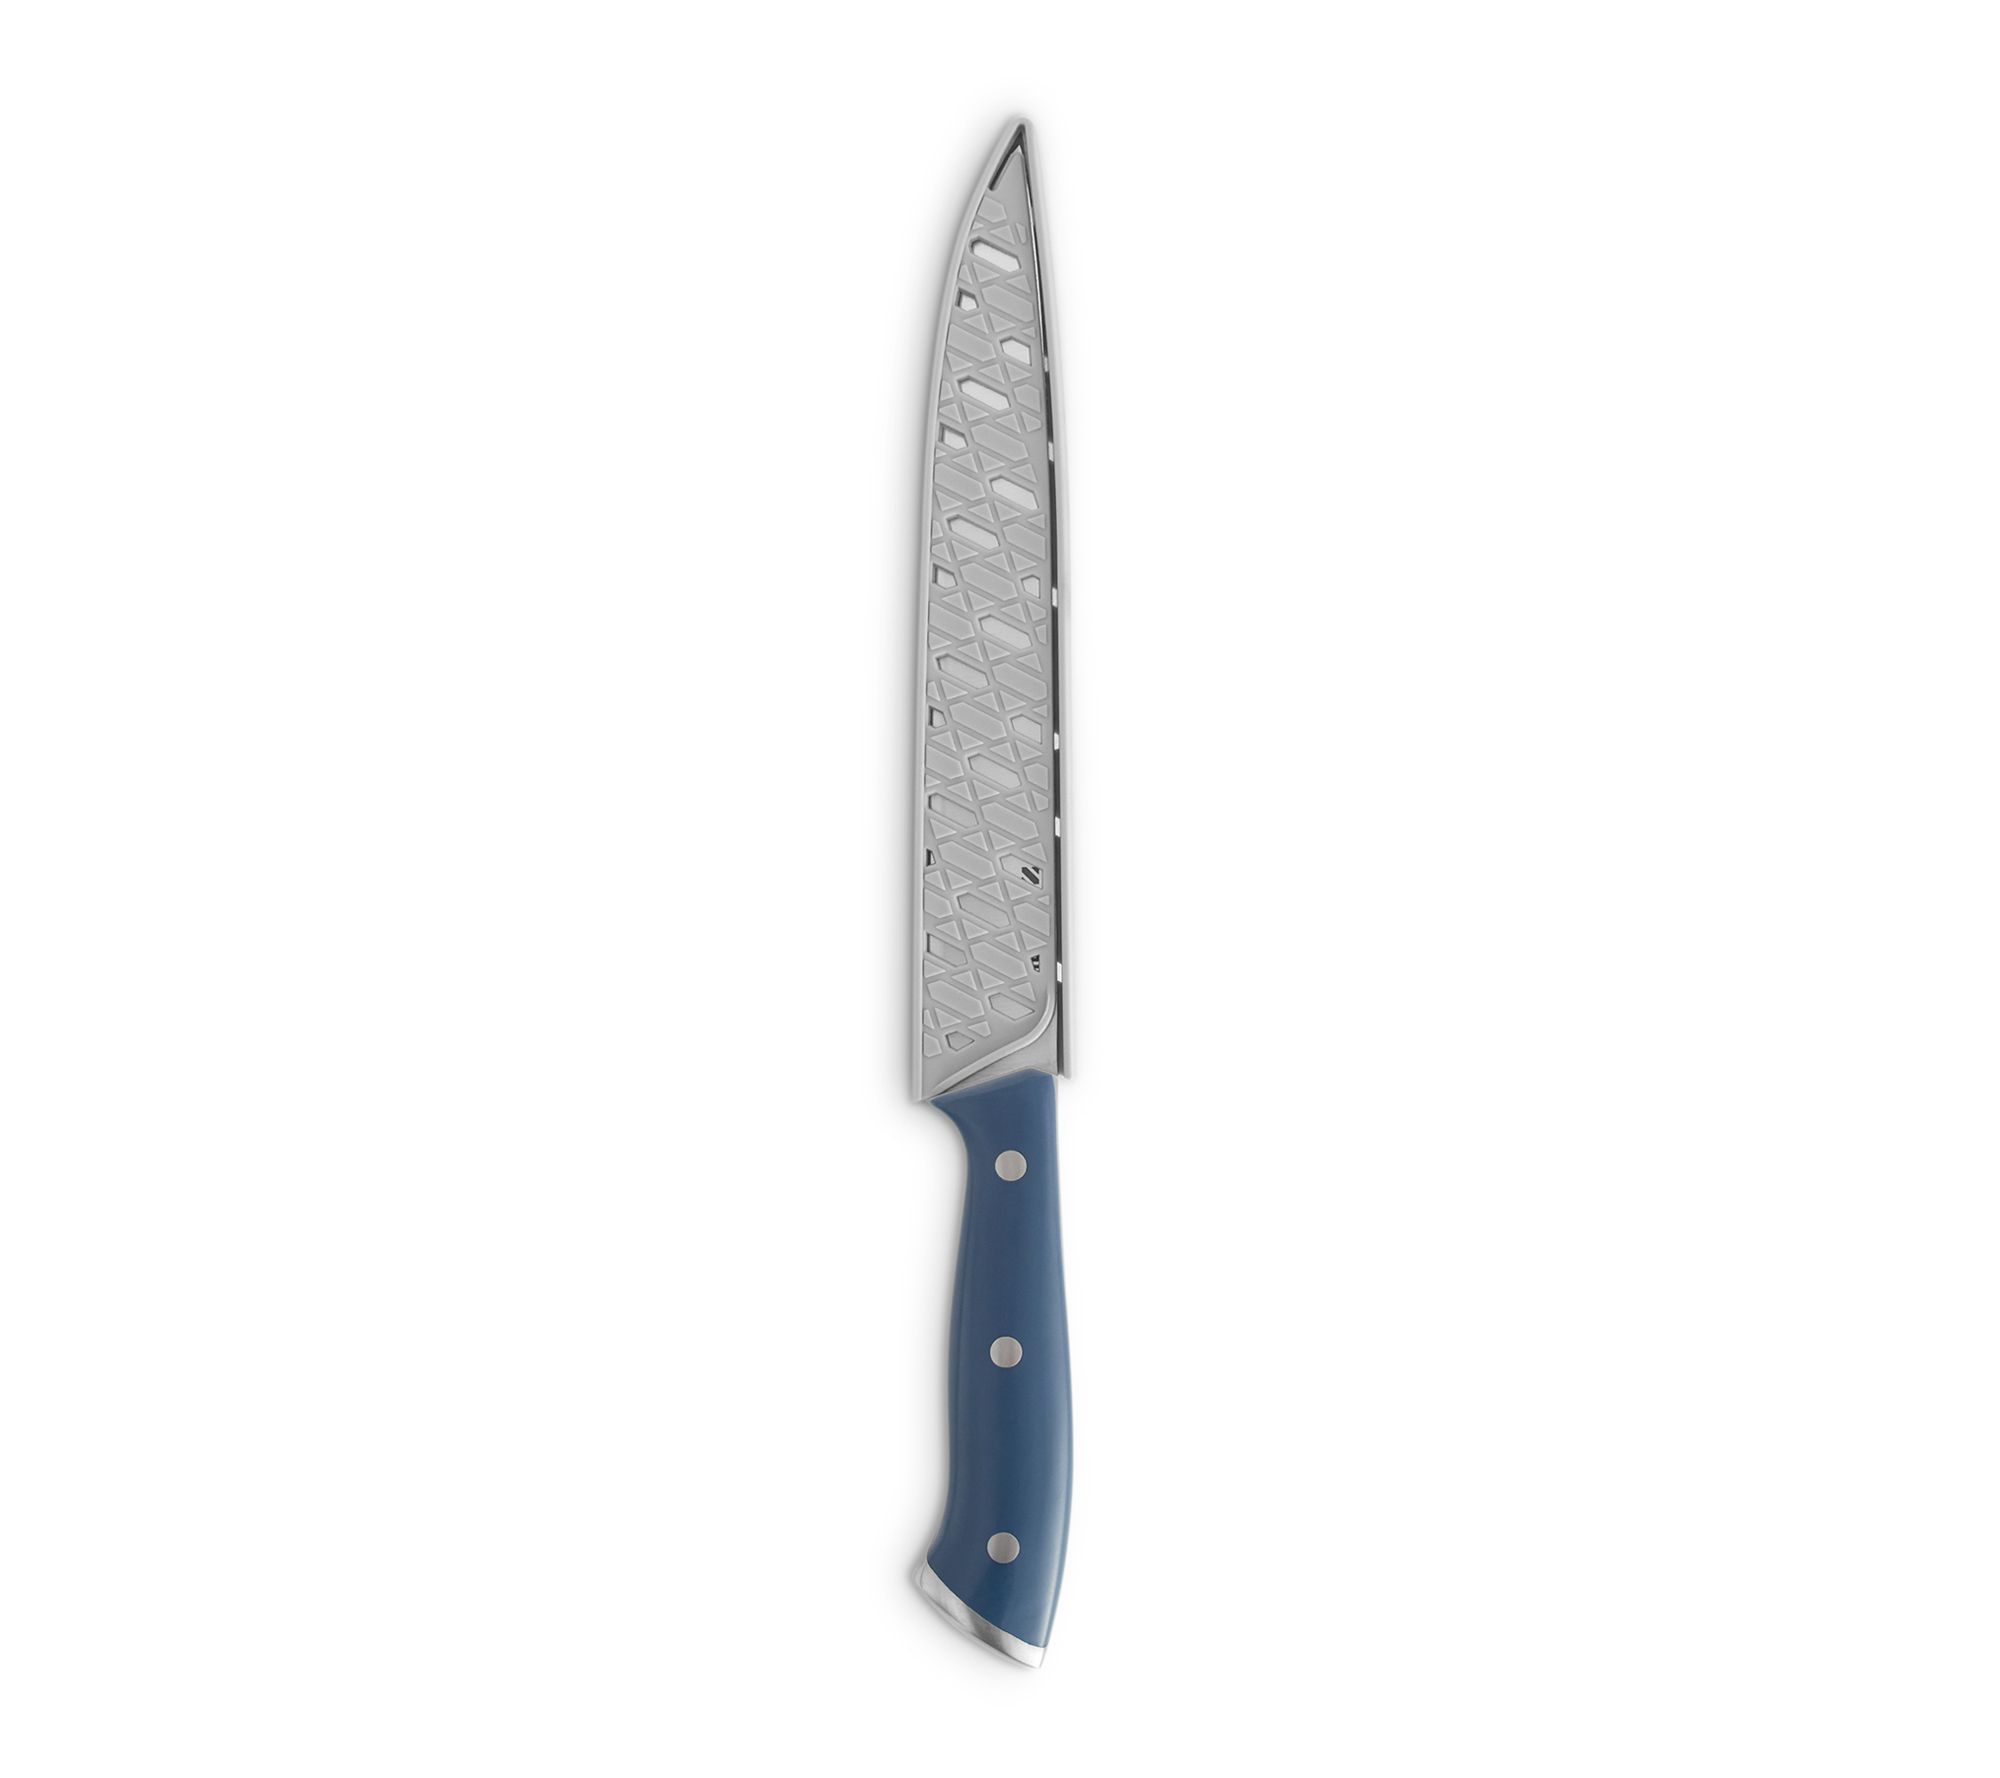 Dia-Cross by Chroma Zaku Giri 6 Stainless Steel Vegetable Knife - Razor  Sharp Vegetable Knife, Chef's Knife, Chef's Vegetable Cleaver, Sharp Knives